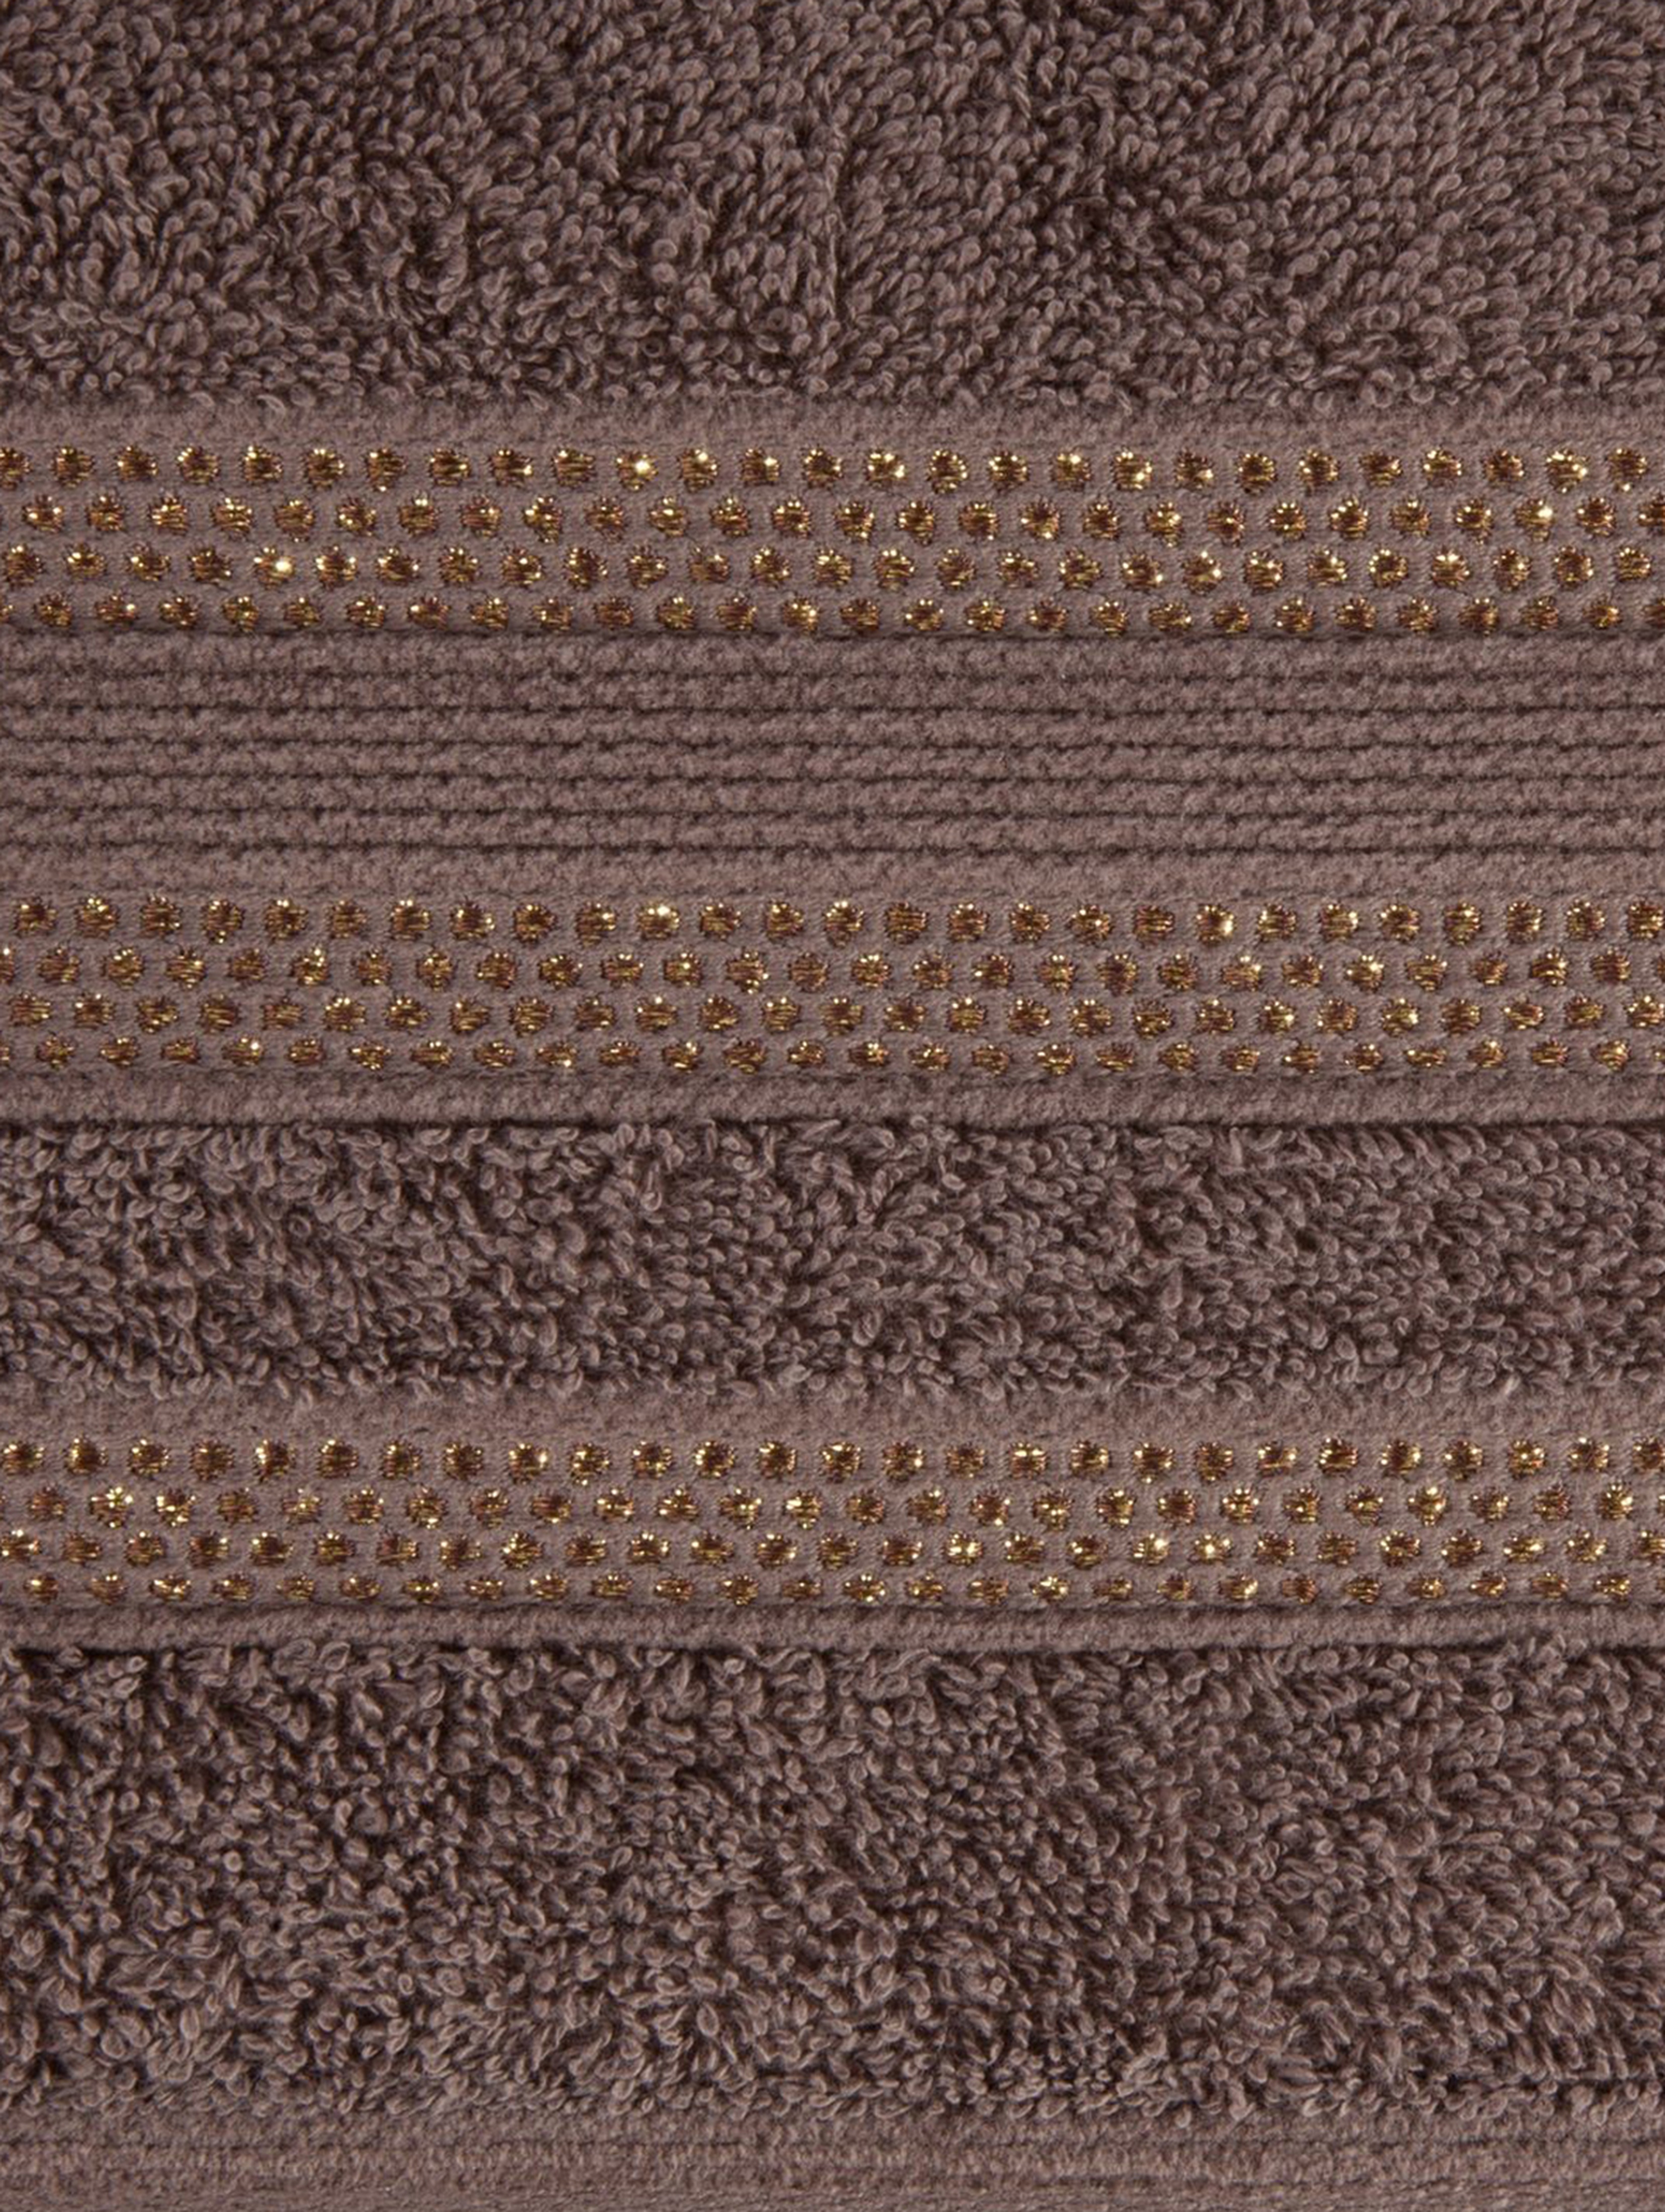 Ręcznik judy (14) 50x90 cm jasnobrązowy